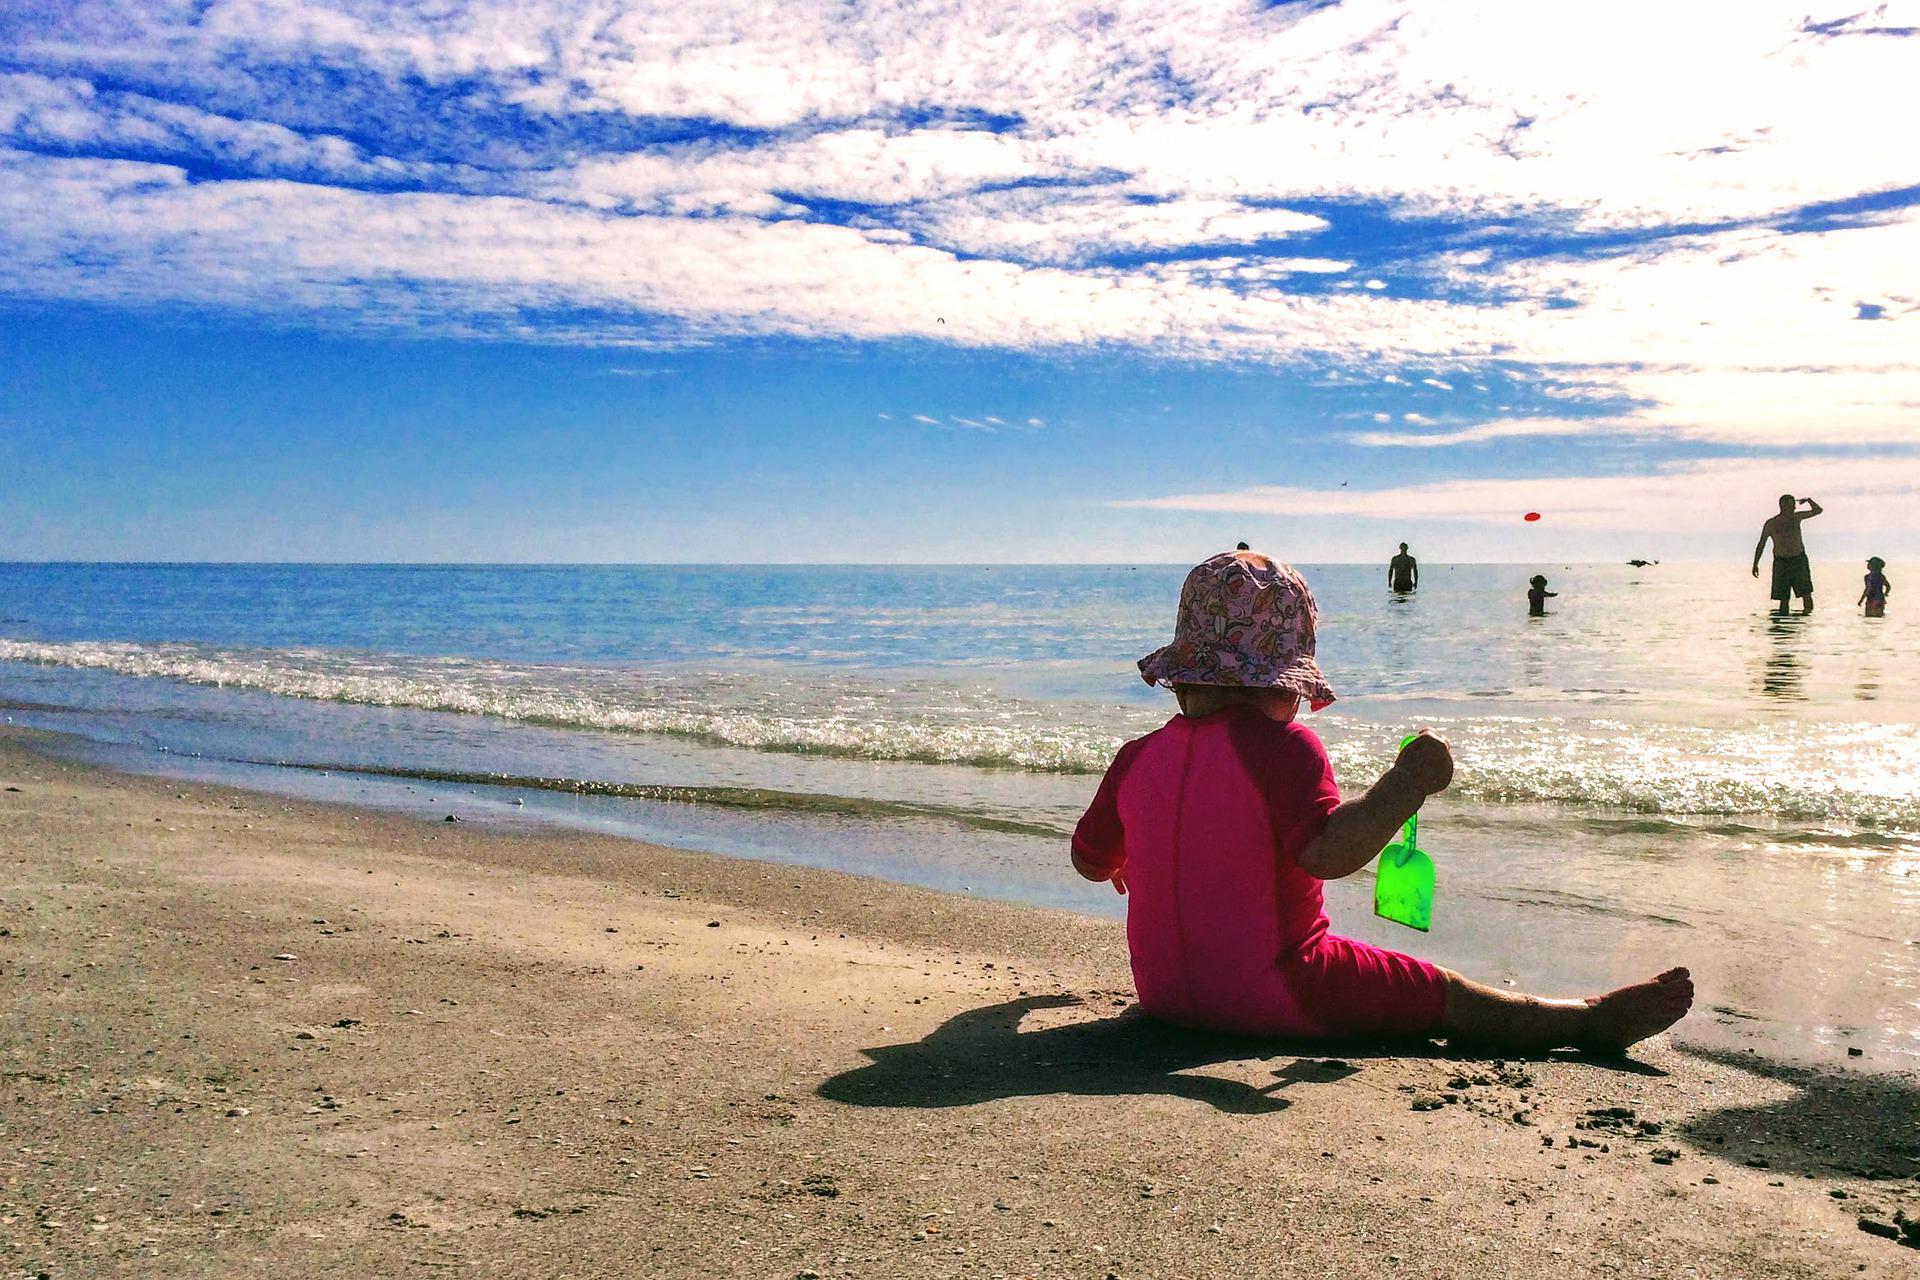 Bébé à la plage : maillot de bain anti-UV et chapeau obligatoires